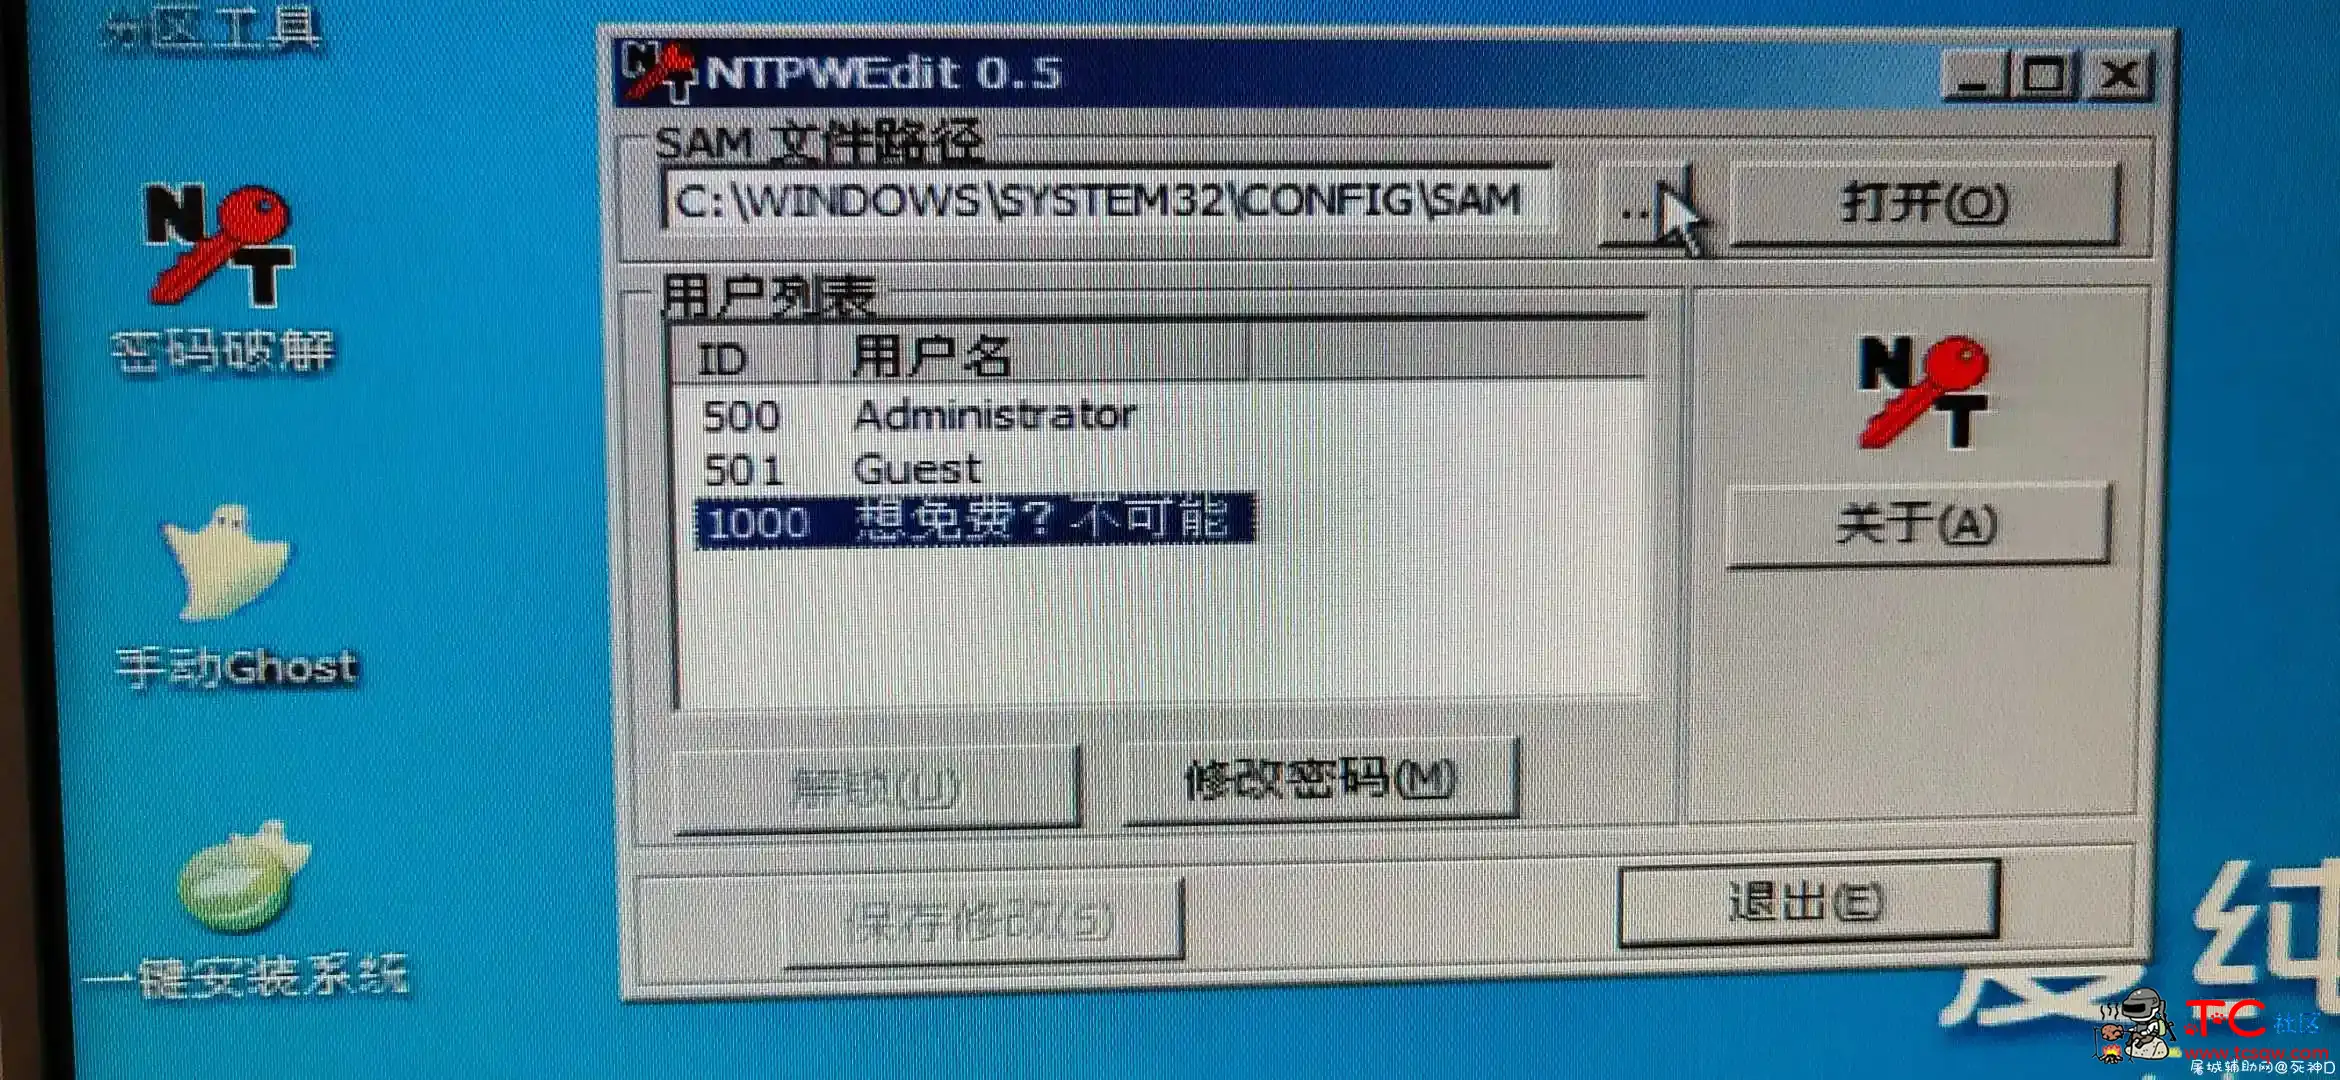 发布锁机软件 屠城辅助网www.tcfz1.com1690